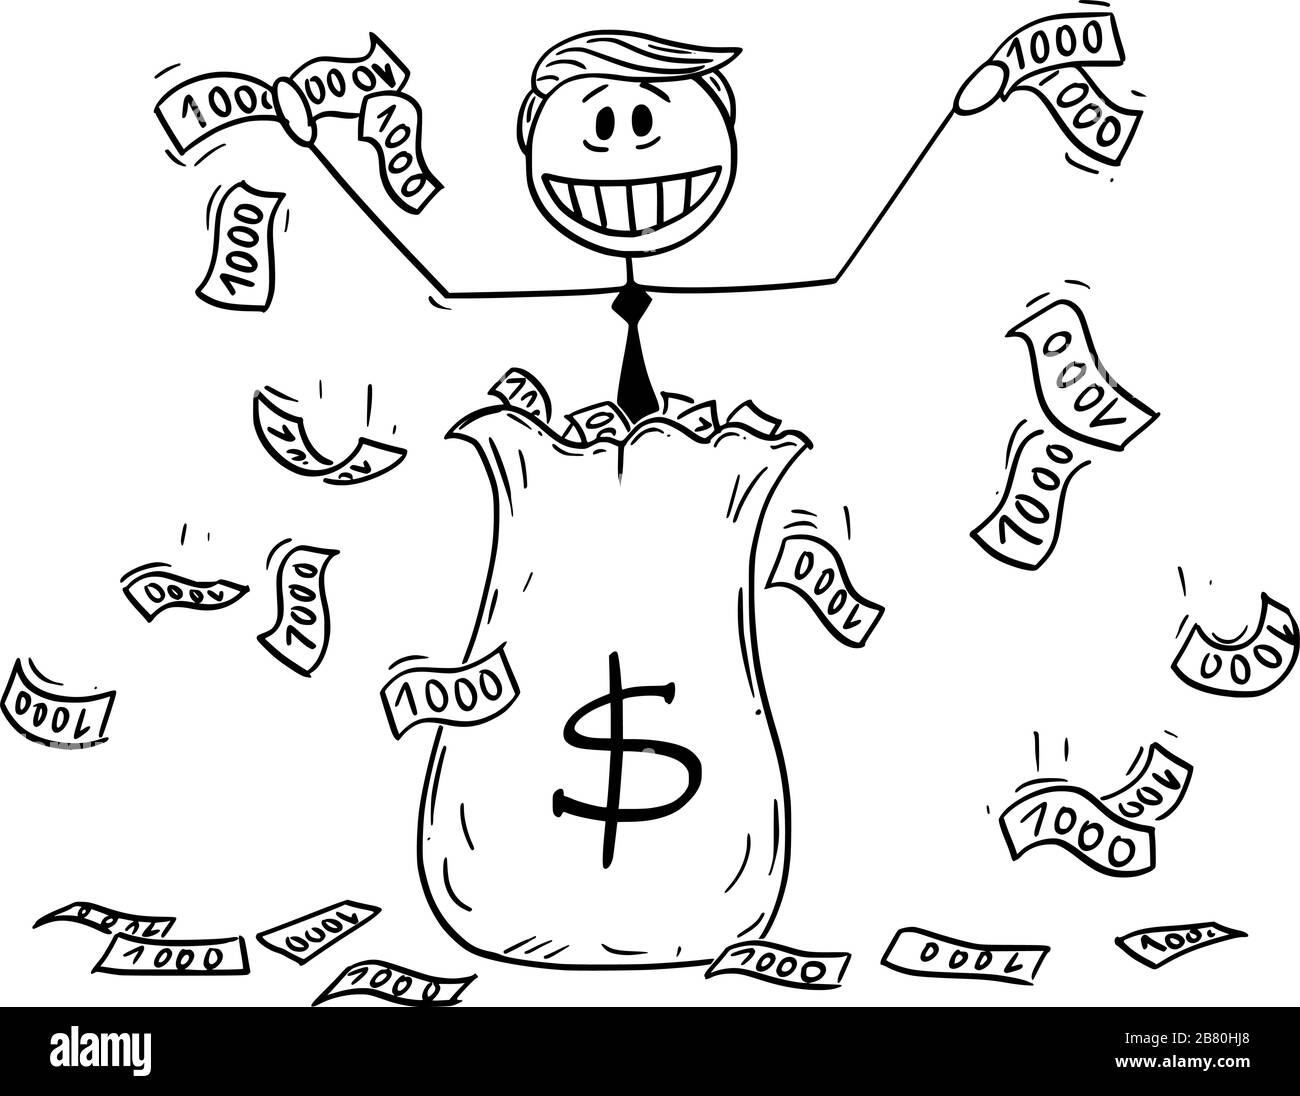 Illustration vectorielle du président américain Donald Trump qui jette de l'argent en utilisant de l'argent hélicoptère ou un assouplissement quantitatif pendant la récession.19 mars 2020. Illustration de Vecteur